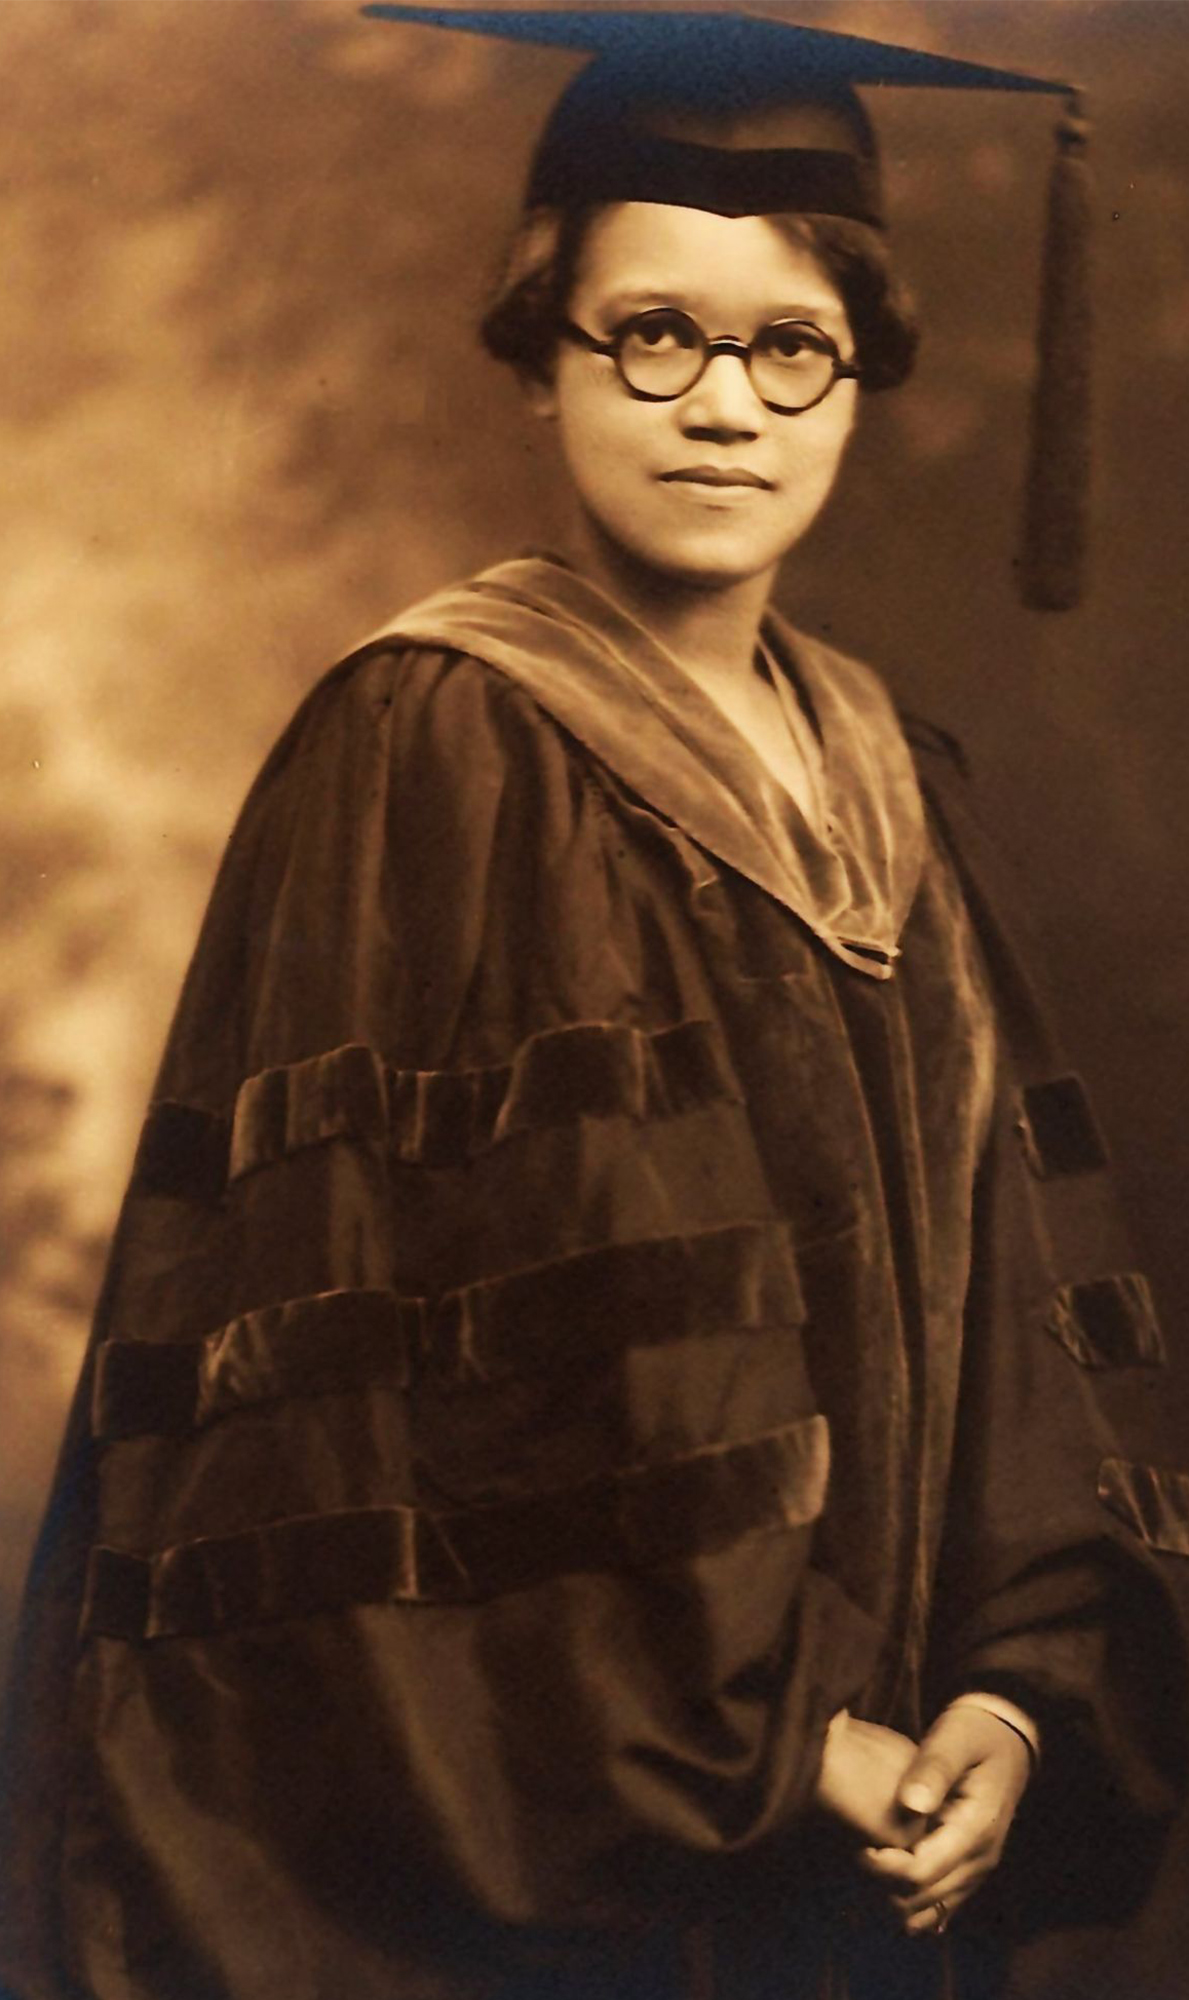 Sadie Alexander in her academic gown on June 15, 1921.